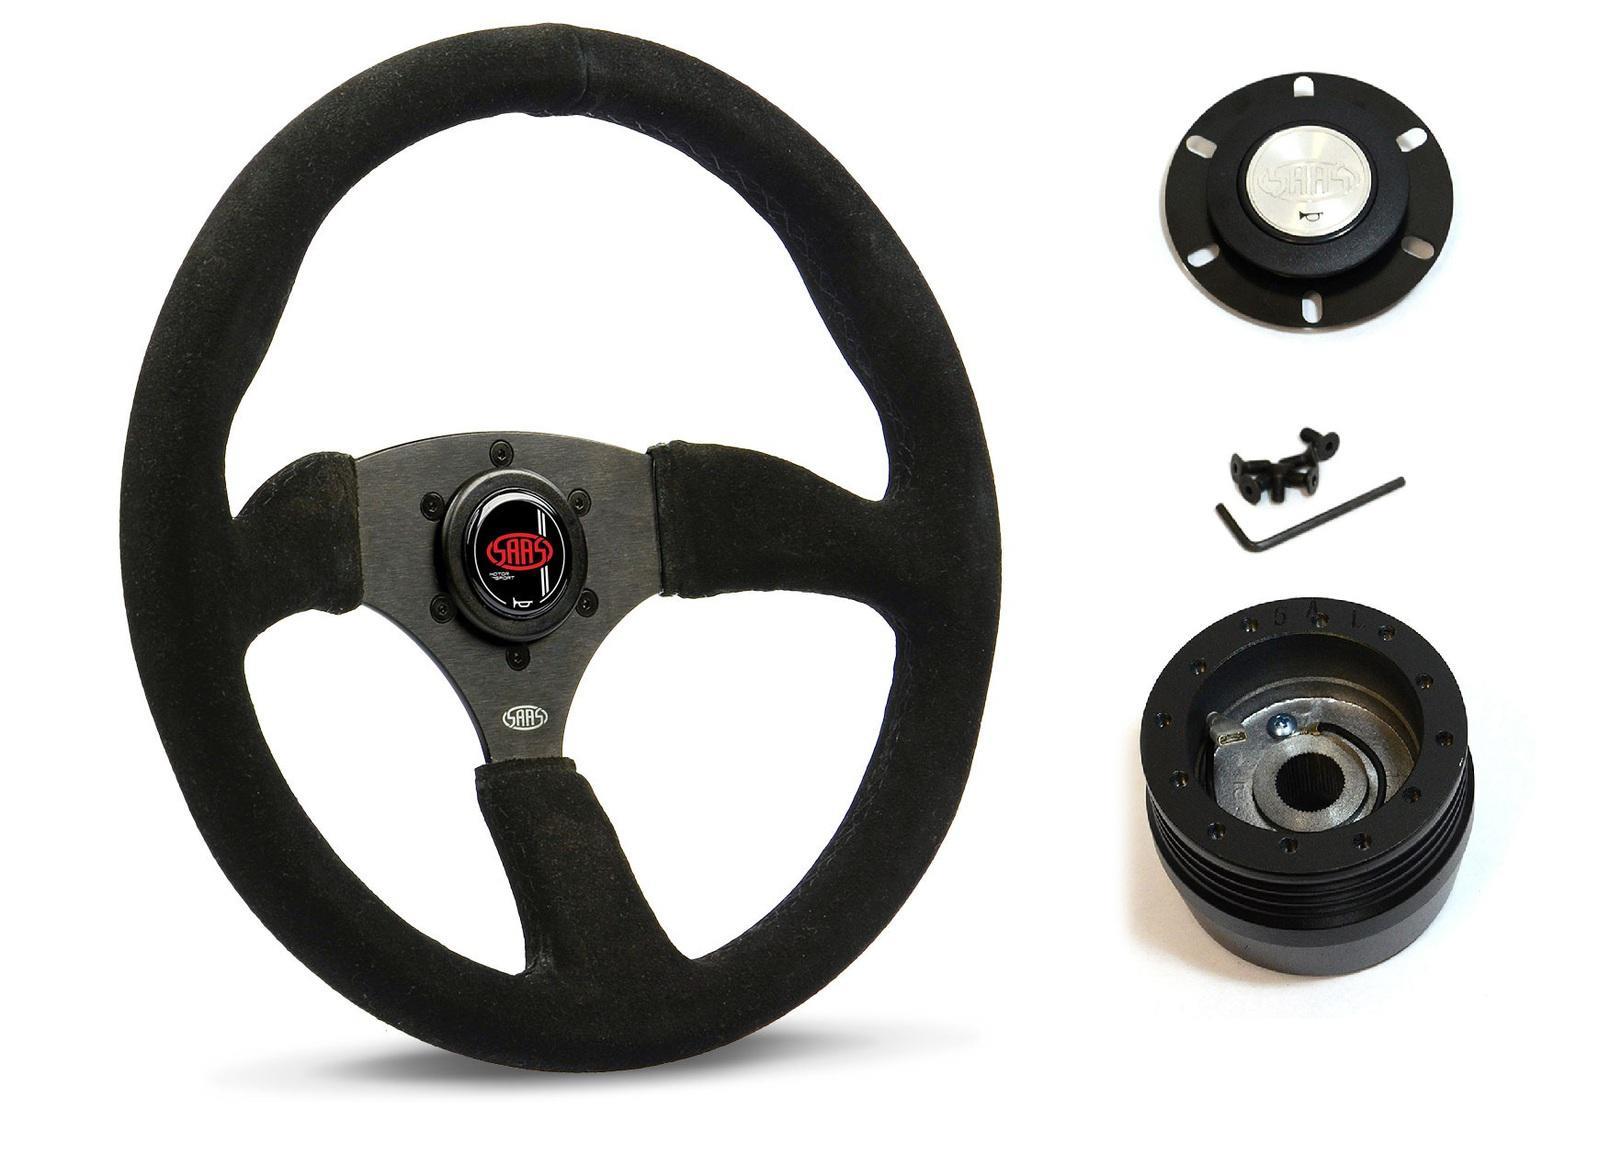 SAAS Steering Wheel Suede 14" ADR Tokyo Motorsport Black Spoke SWMS1 and SAAS boss kit for Holden Nova LG 1993-1997